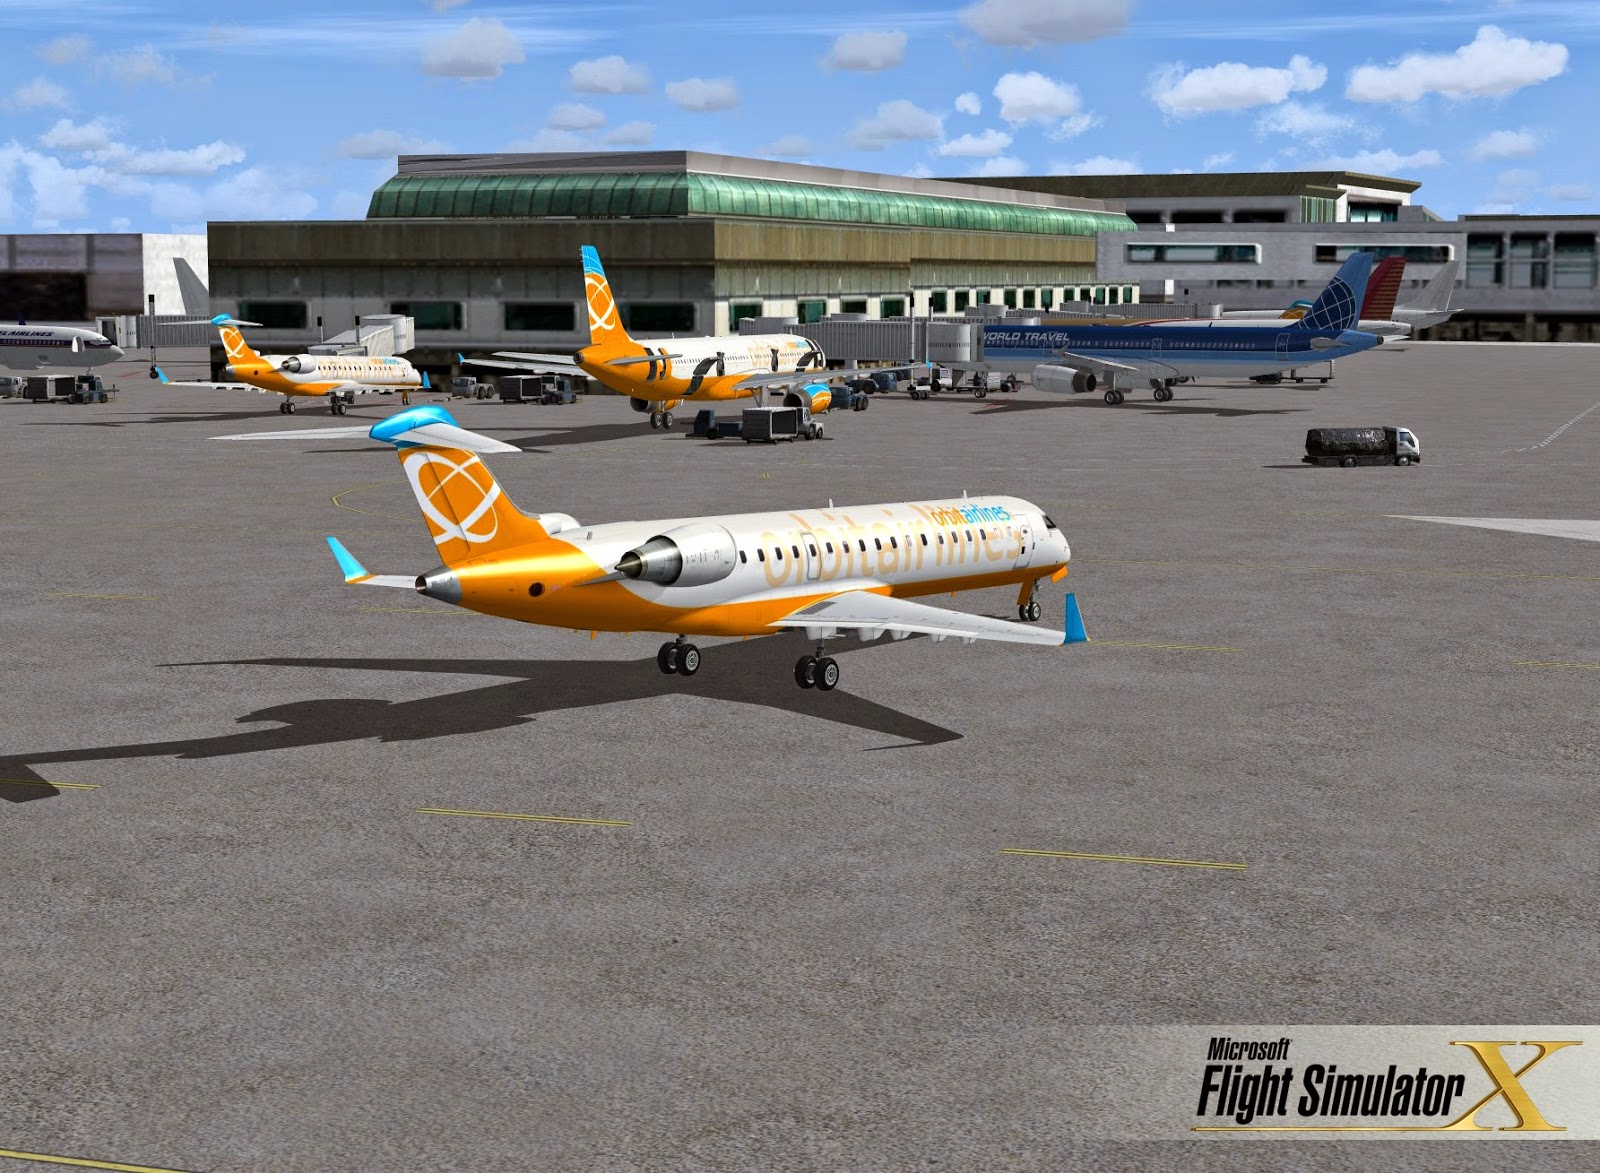 flight simulator free full version